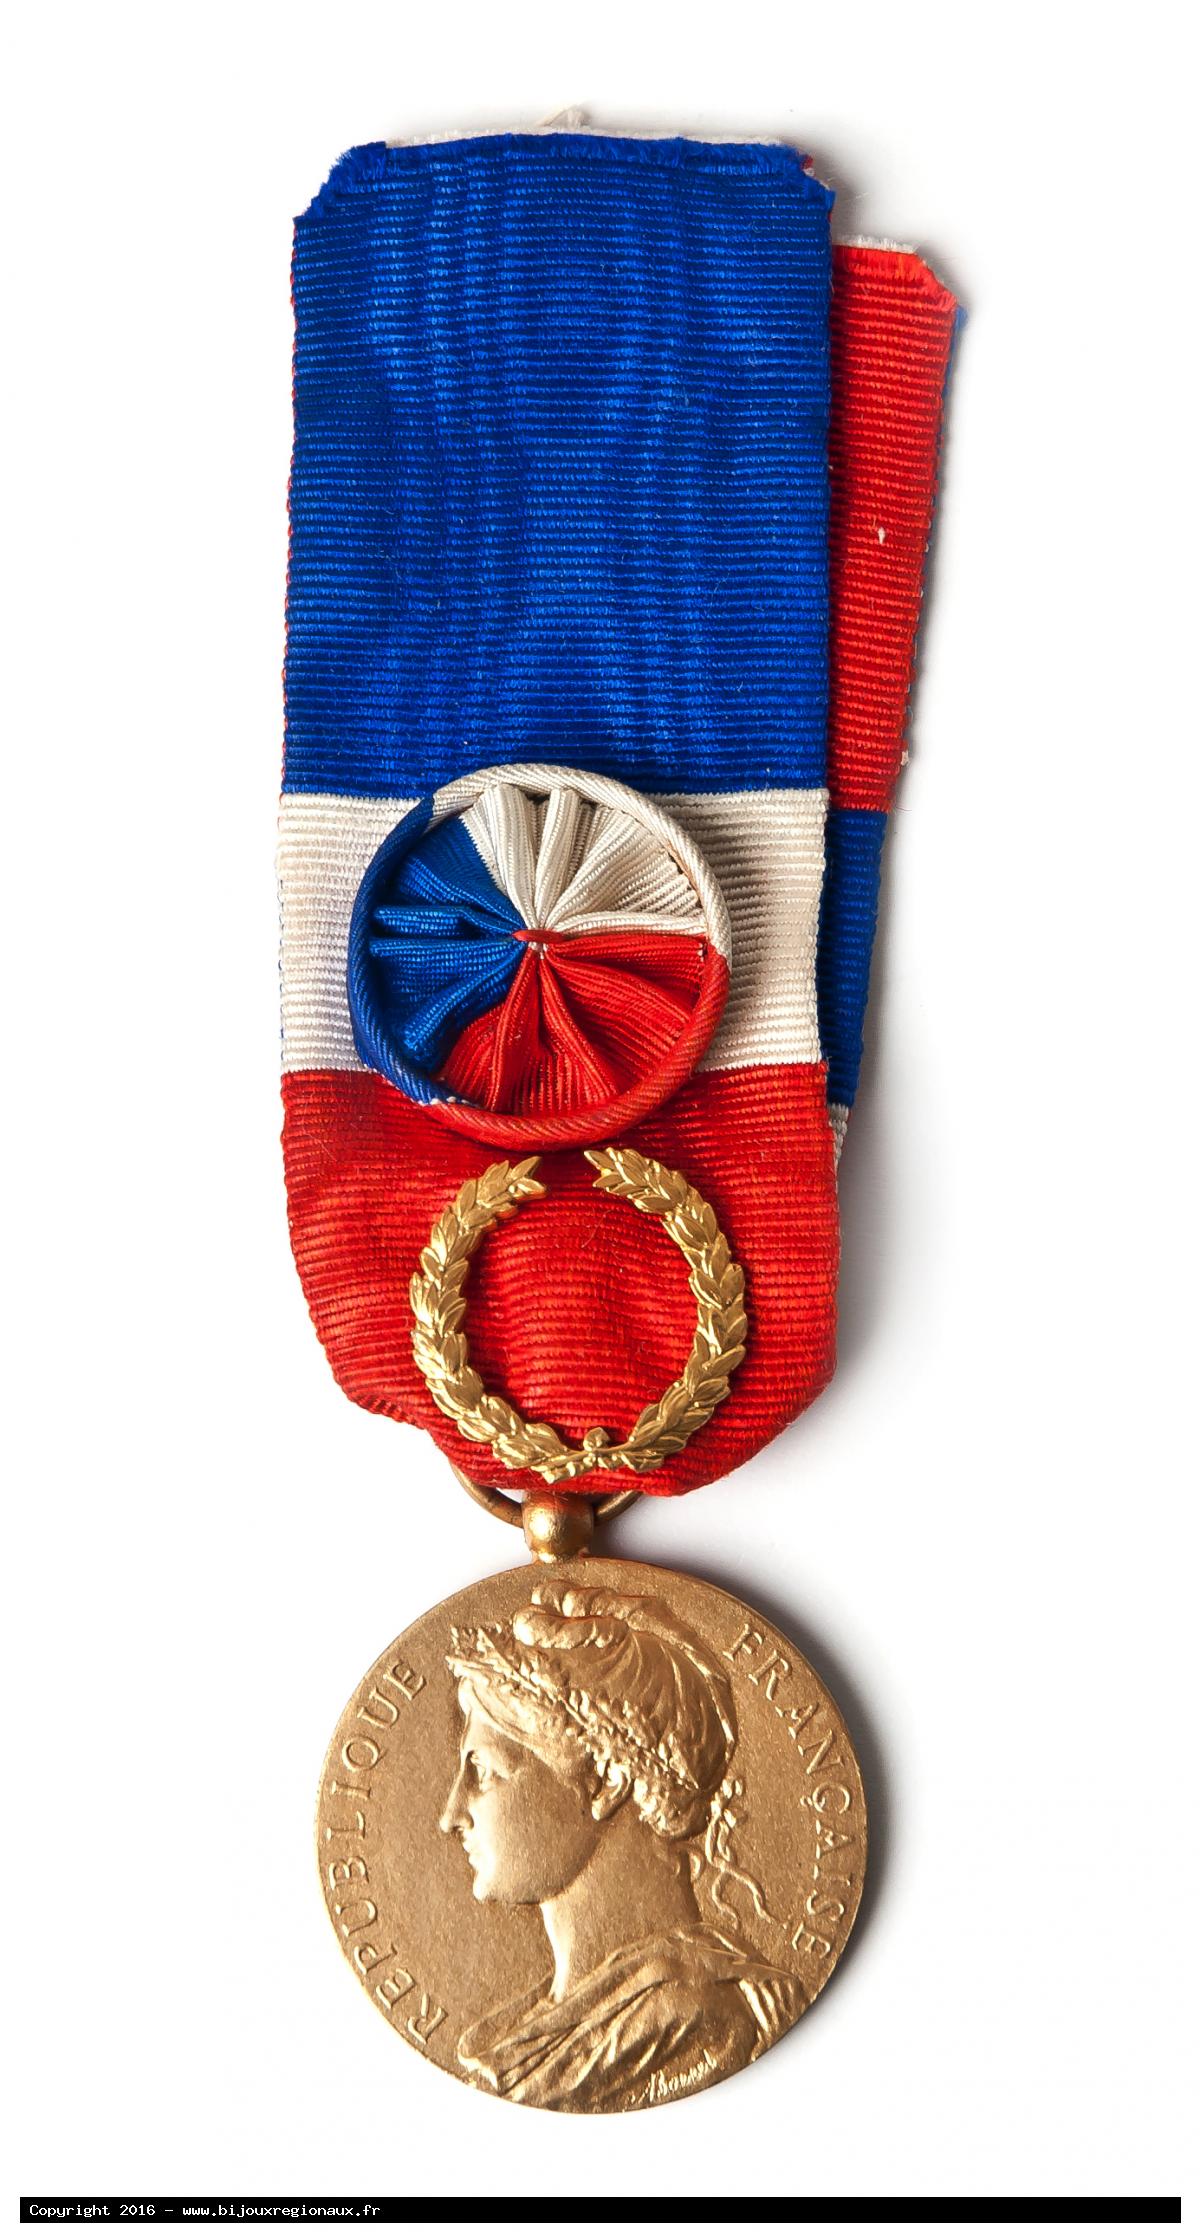 Médaille cours d'adulte , Dubois 1906 sans poincon